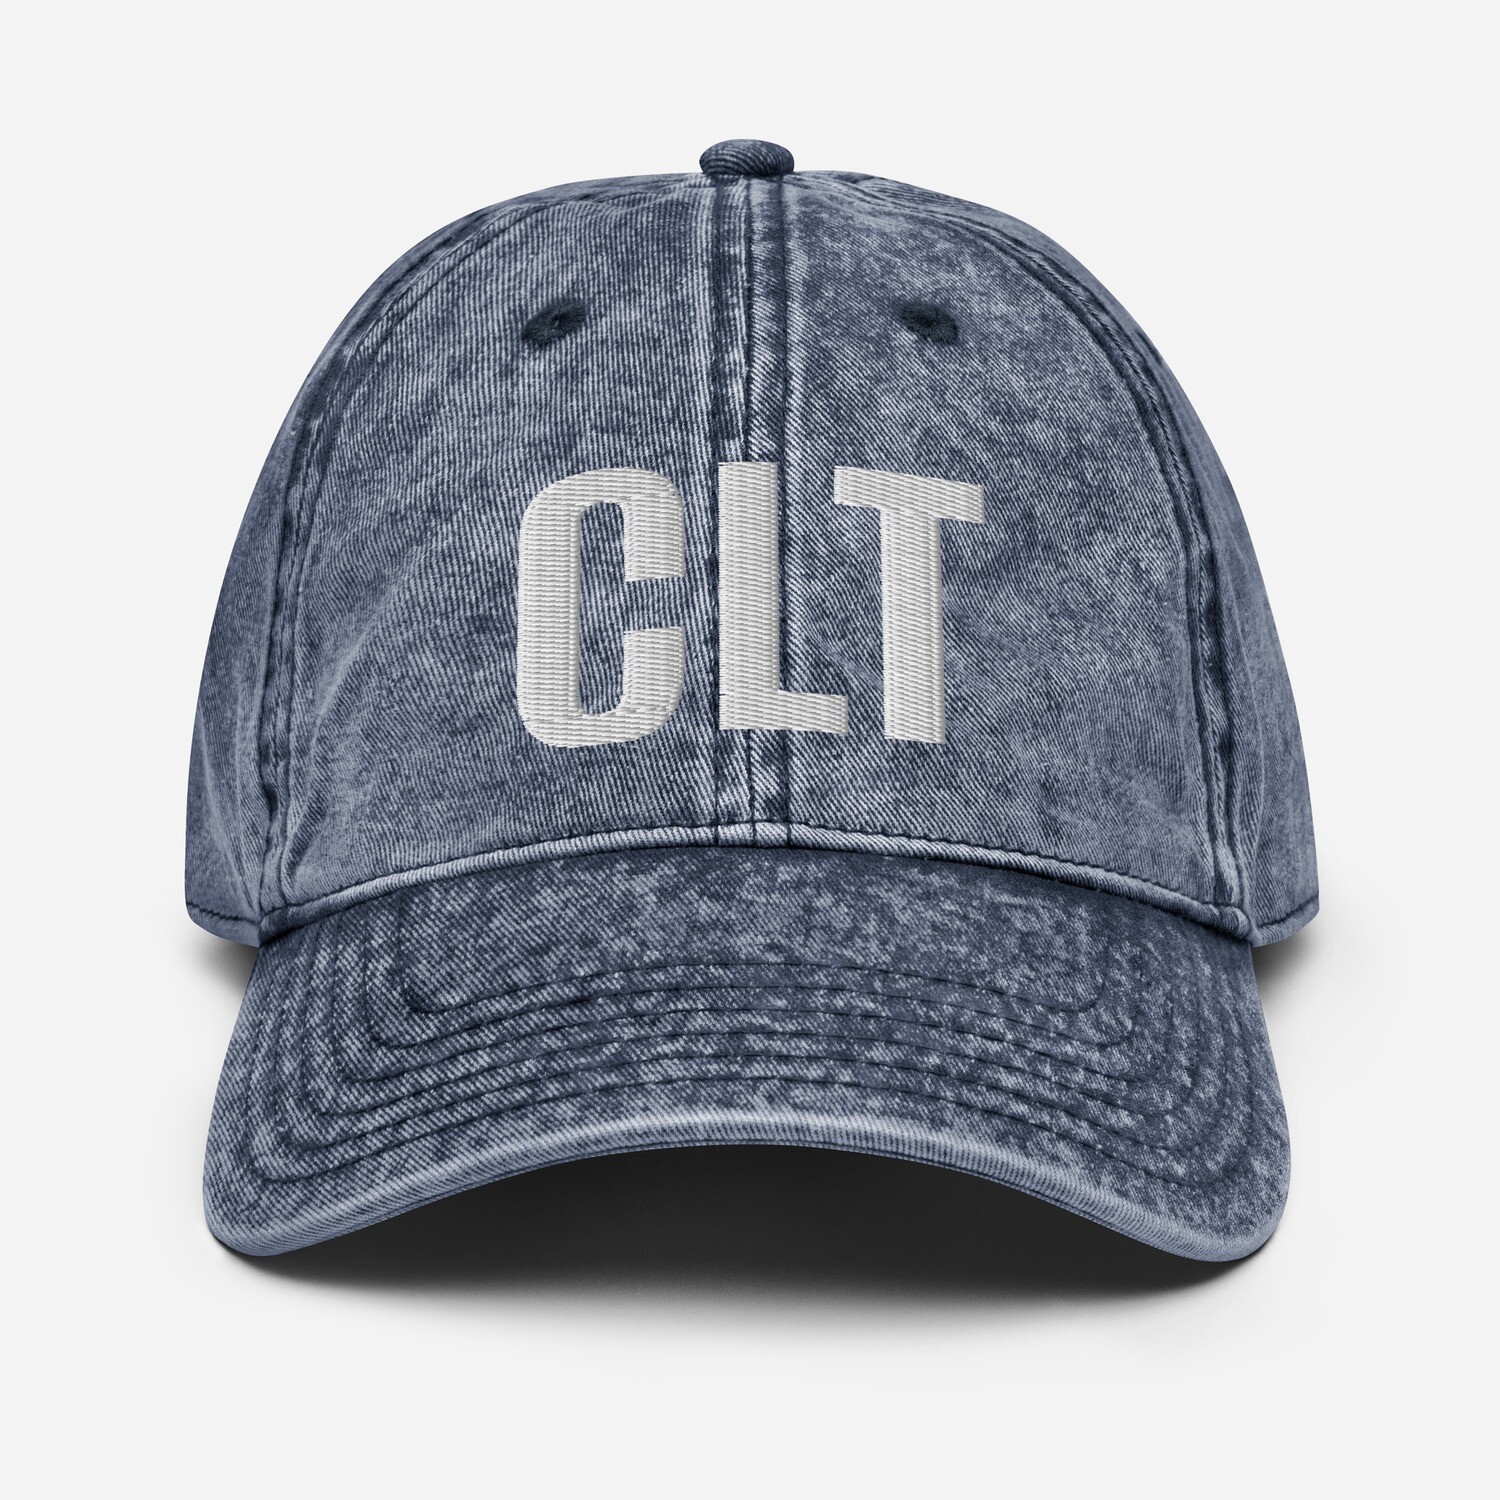 CLT Vintage Cotton Twill Cap